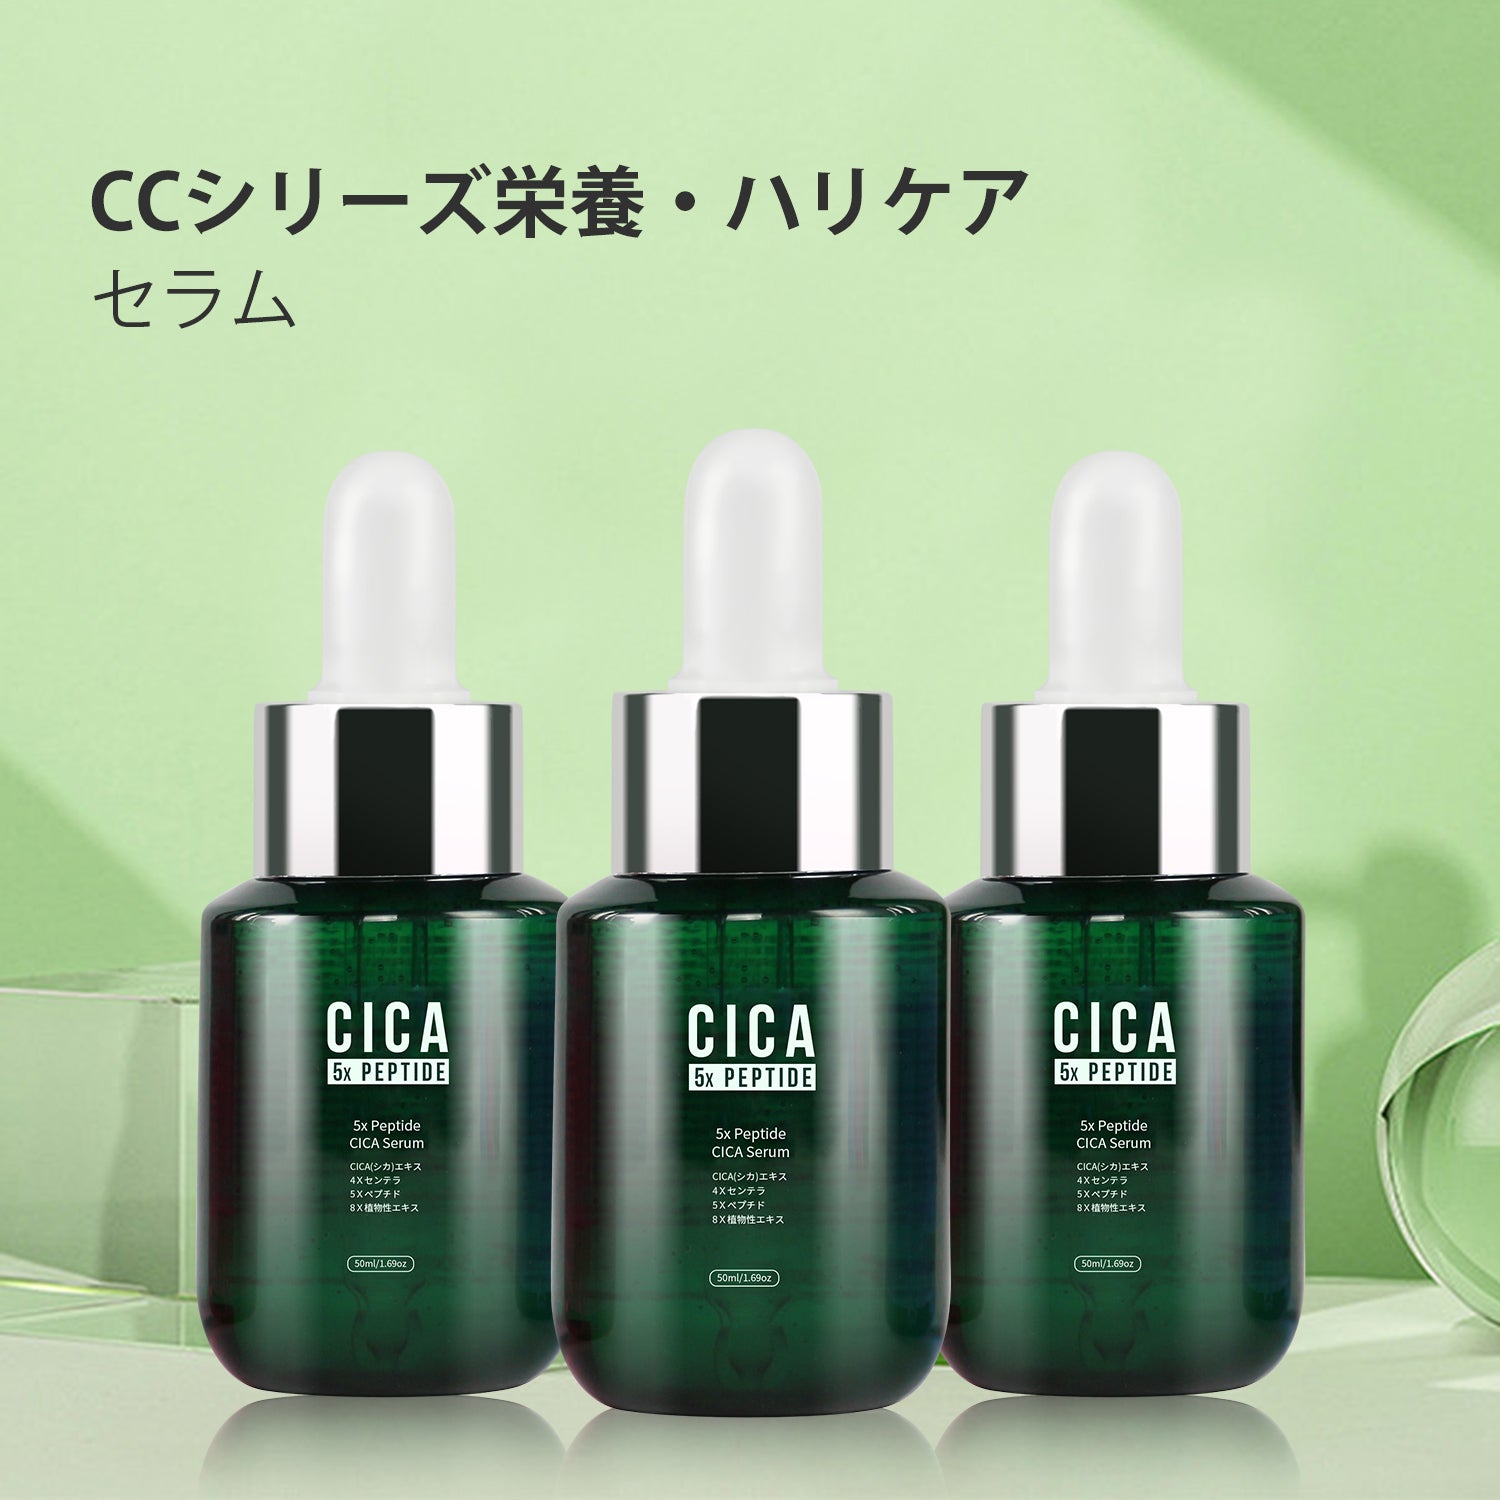 MITOMO 日本製 CICA シカ 5種ペプチド シカ保湿 スキンケア 潤い